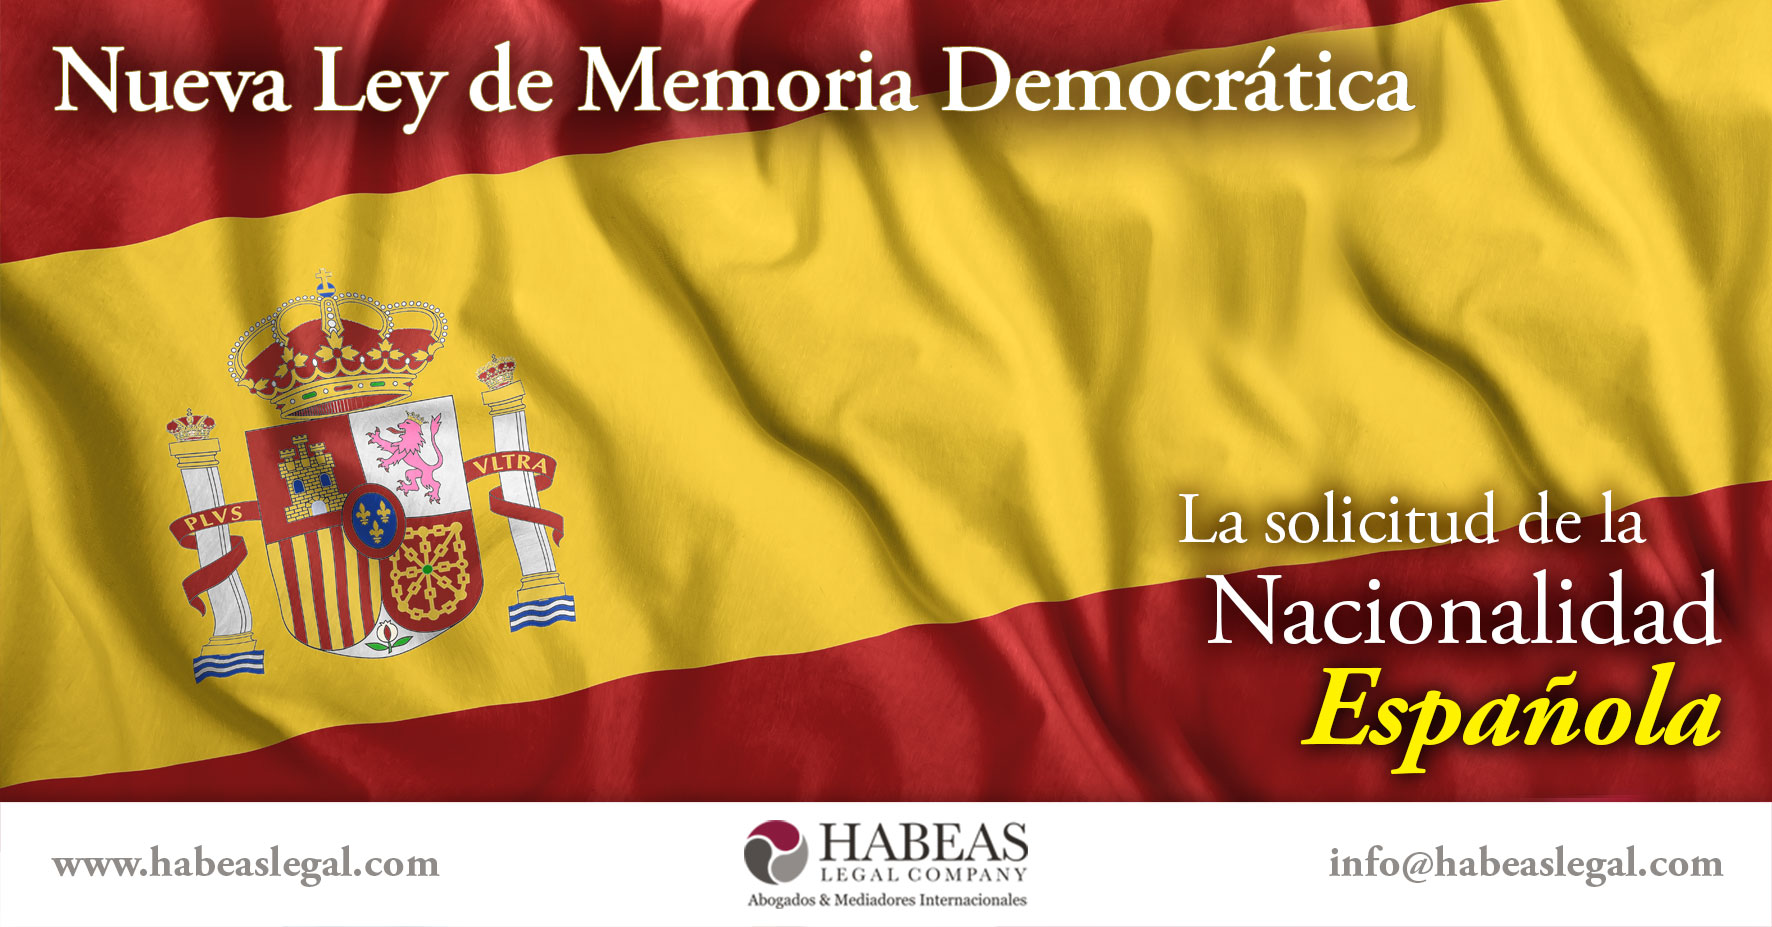 Nueva Ley Memoria Democratica Nacionalidad Espanola Habeas Legal - Blog